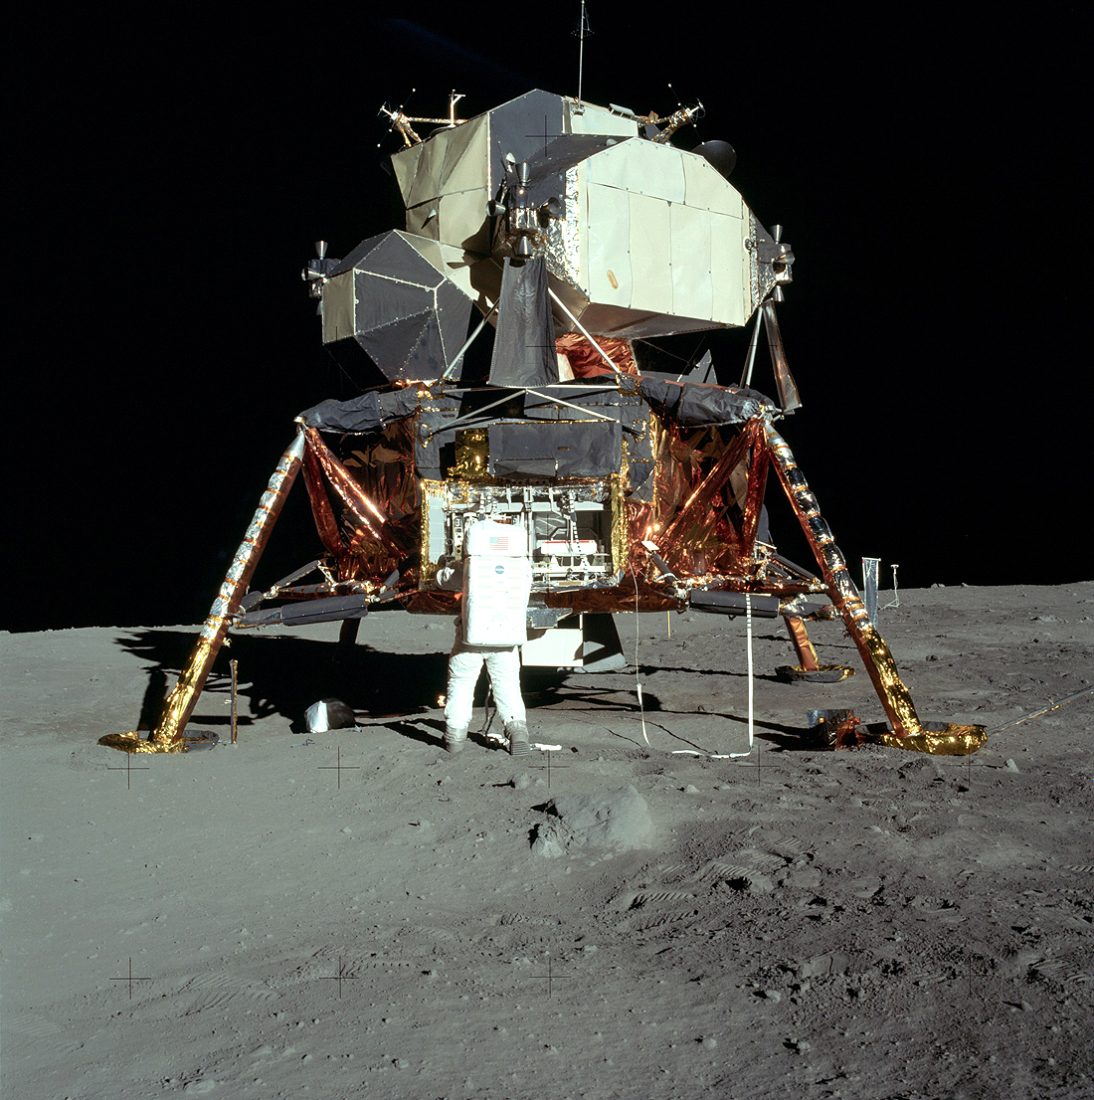 Pirmas Apollo 11 Lunar module Eagle